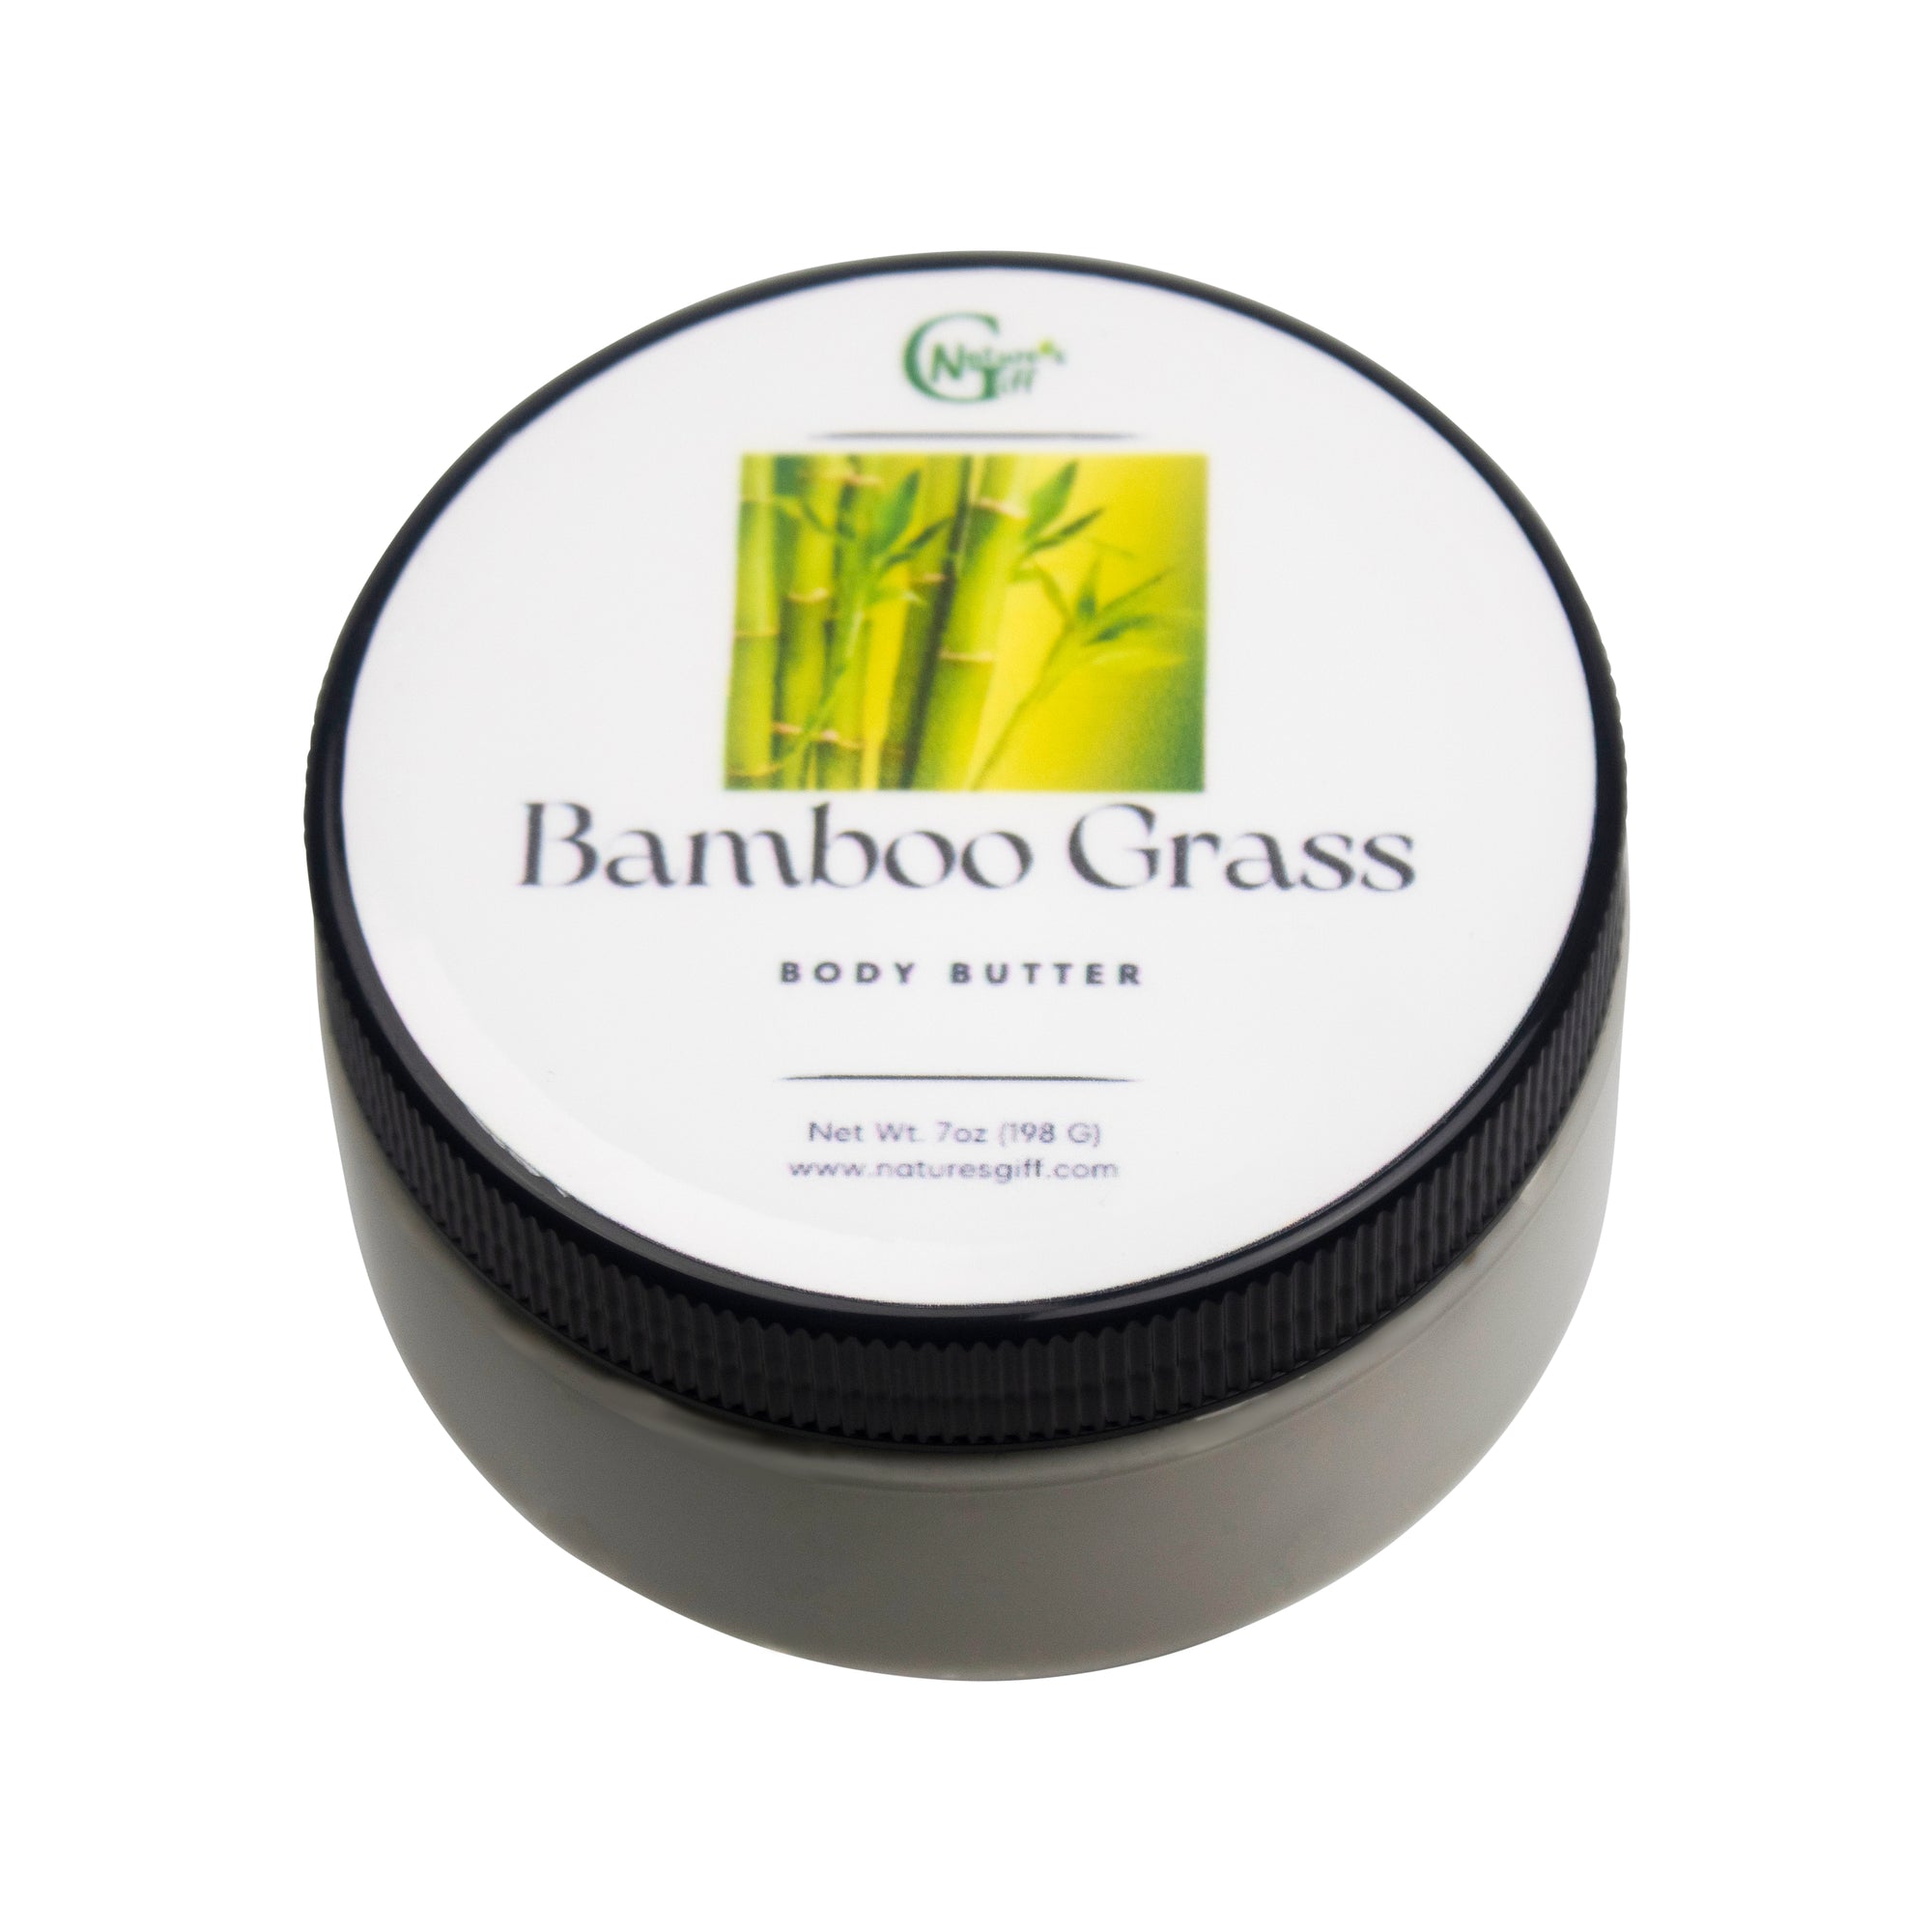 Bamboo Grass Body Butter